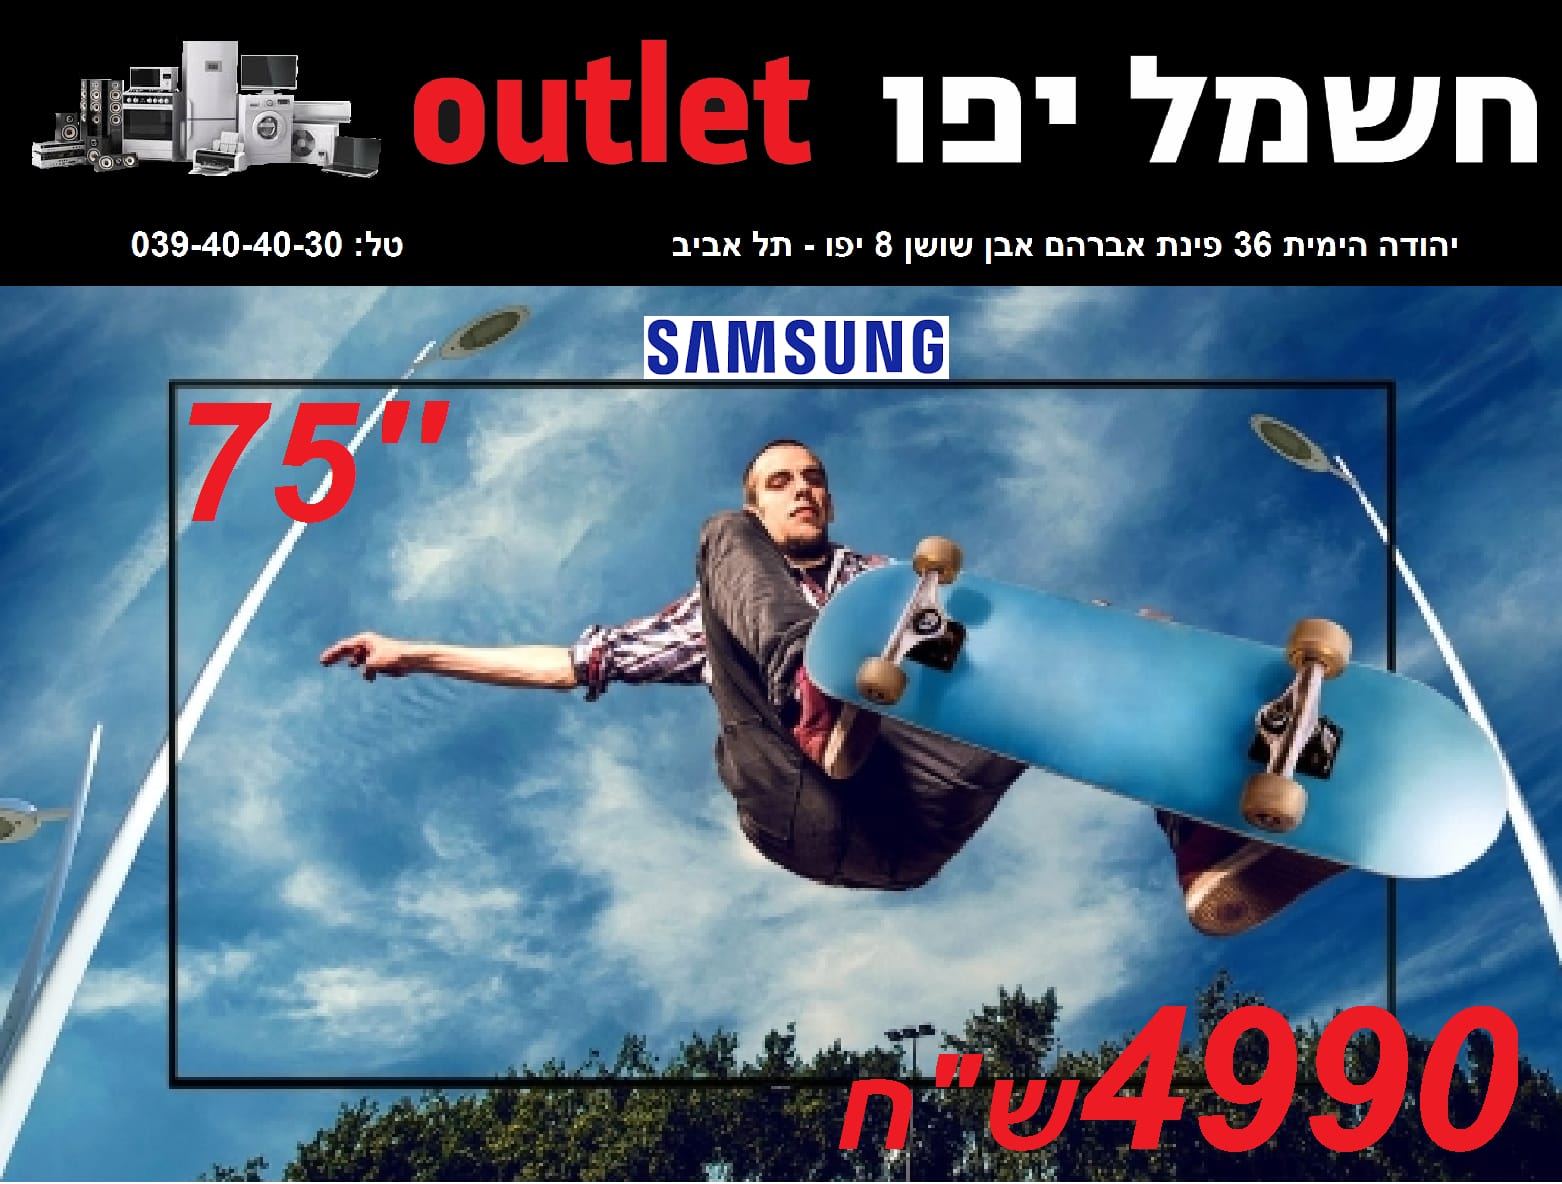 حملة تنزيلات حتى 70% في صالة كهرباء يافا OUTLET 